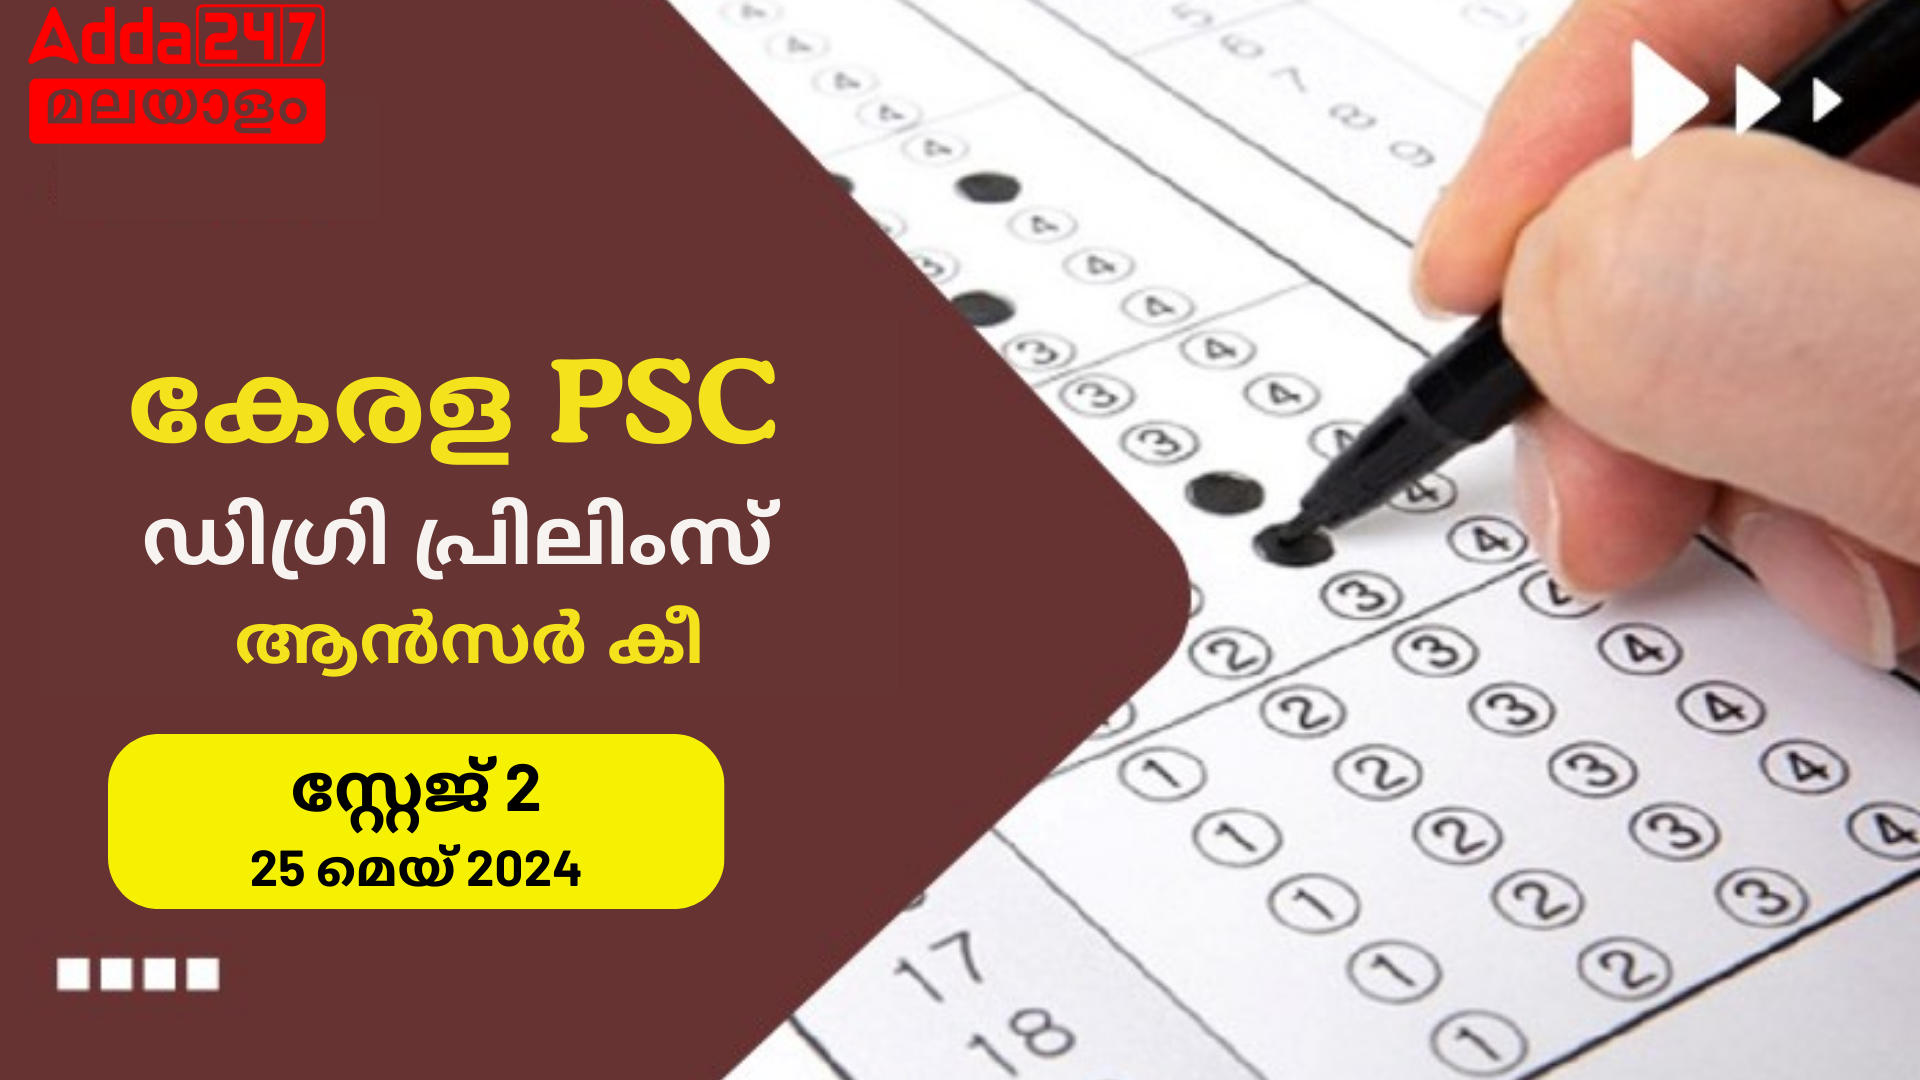 കേരള PSC ഡിഗ്രി പ്രിലിംസ് ആൻസർ കീ 2024 - സ്റ്റേജ് 2